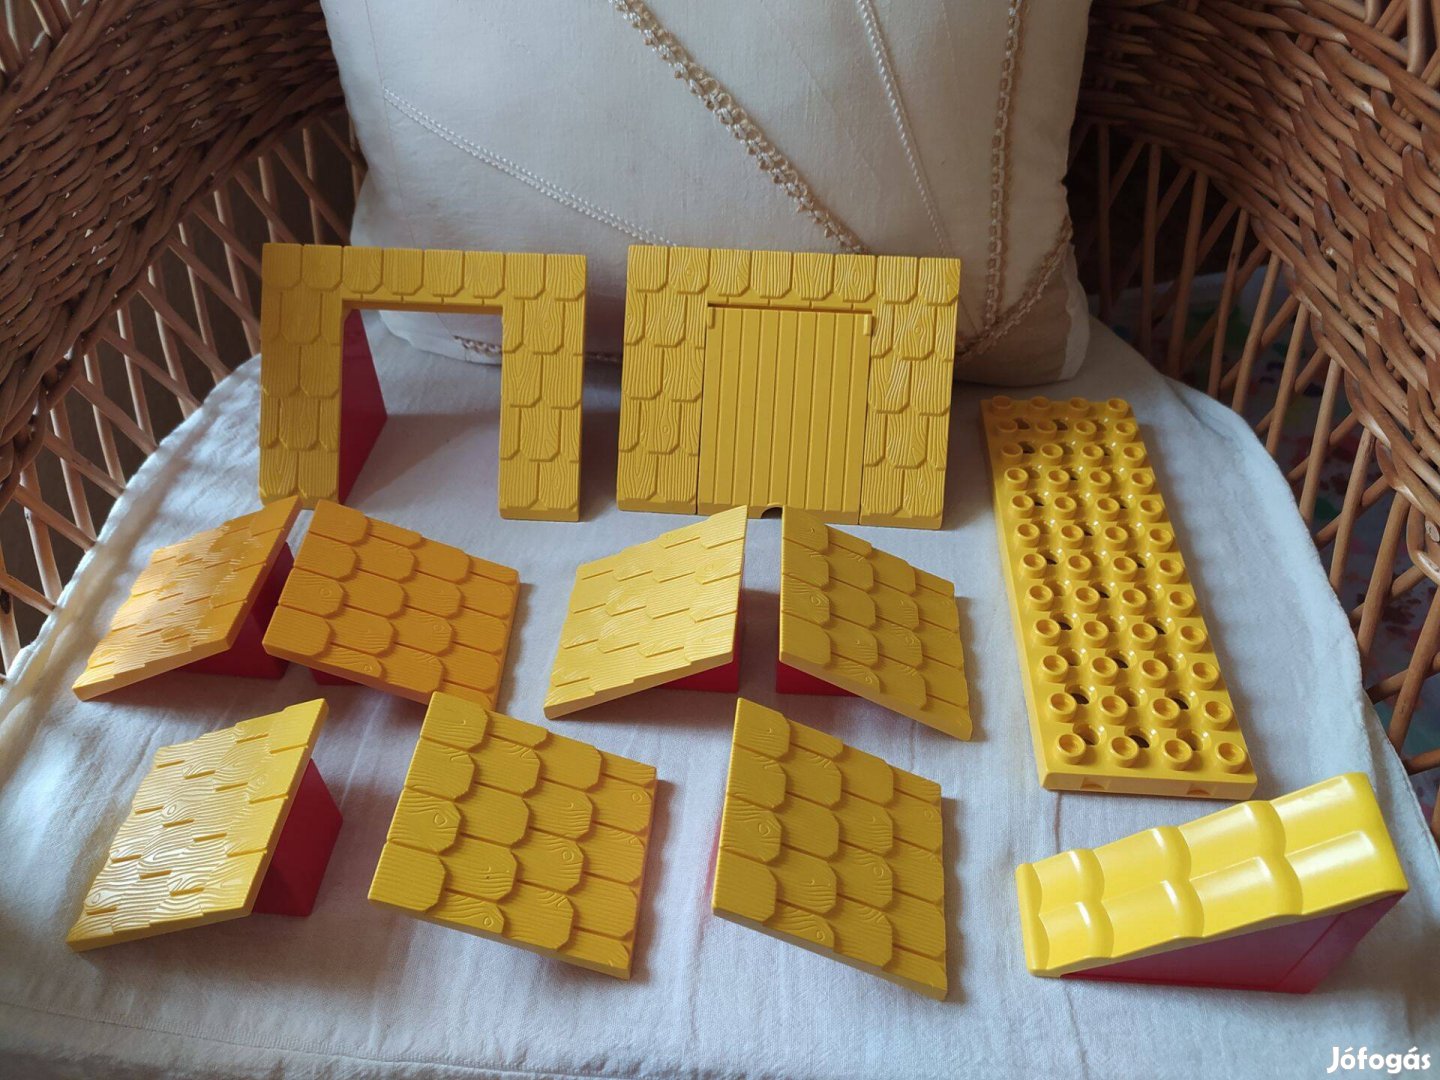 LEGO Duplo tető elemek csomag